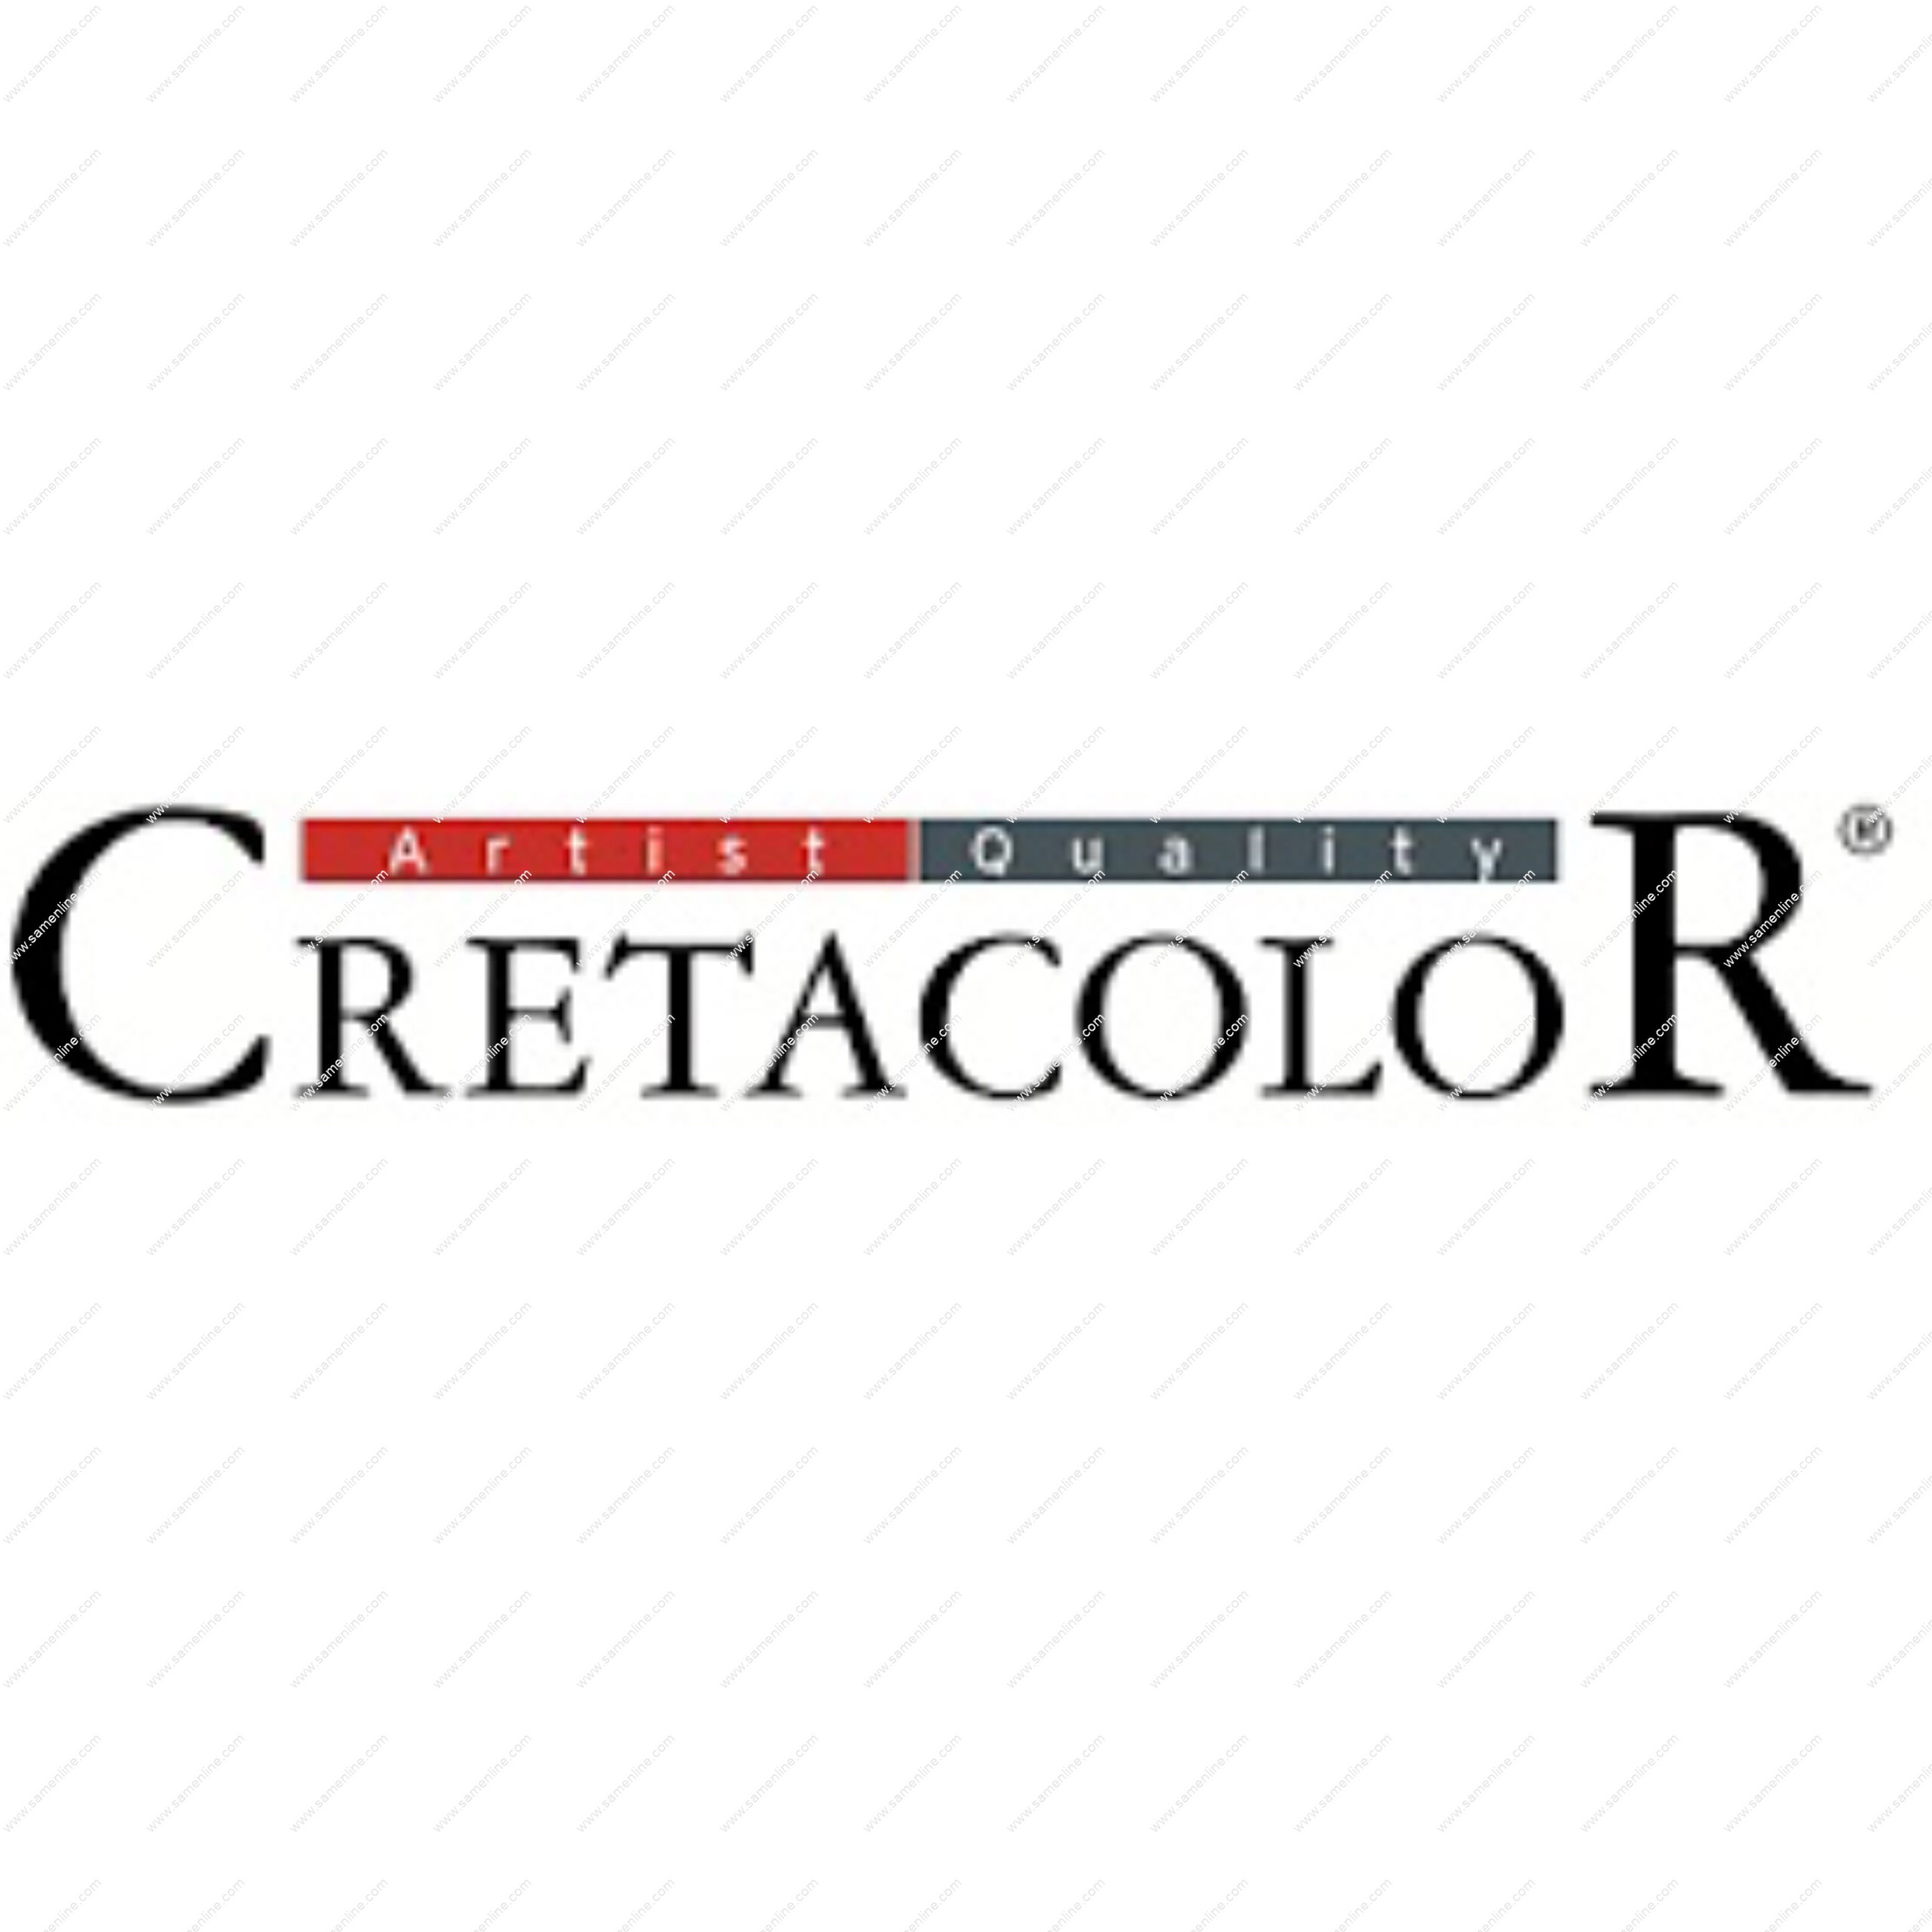 cretacolor